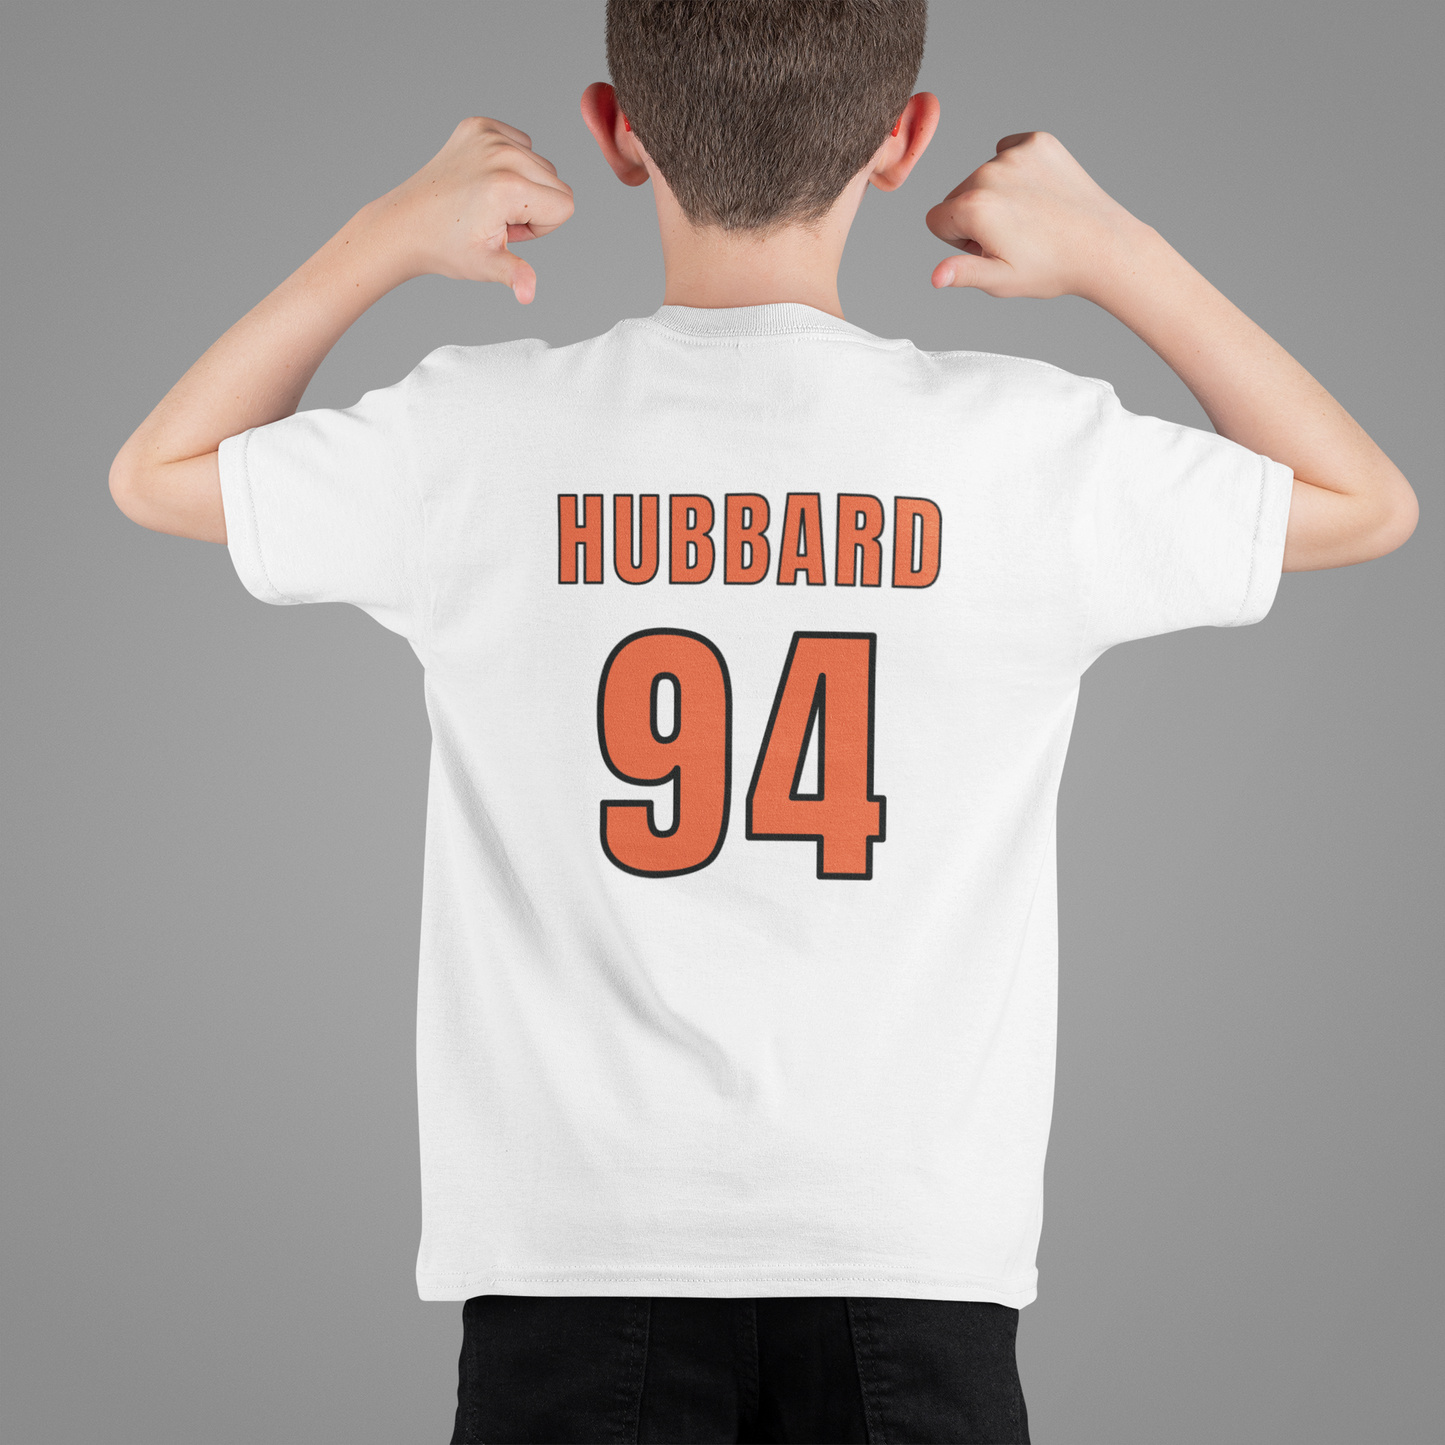 SHF - HUBBARD 94 - T-Shirt - UNISEX